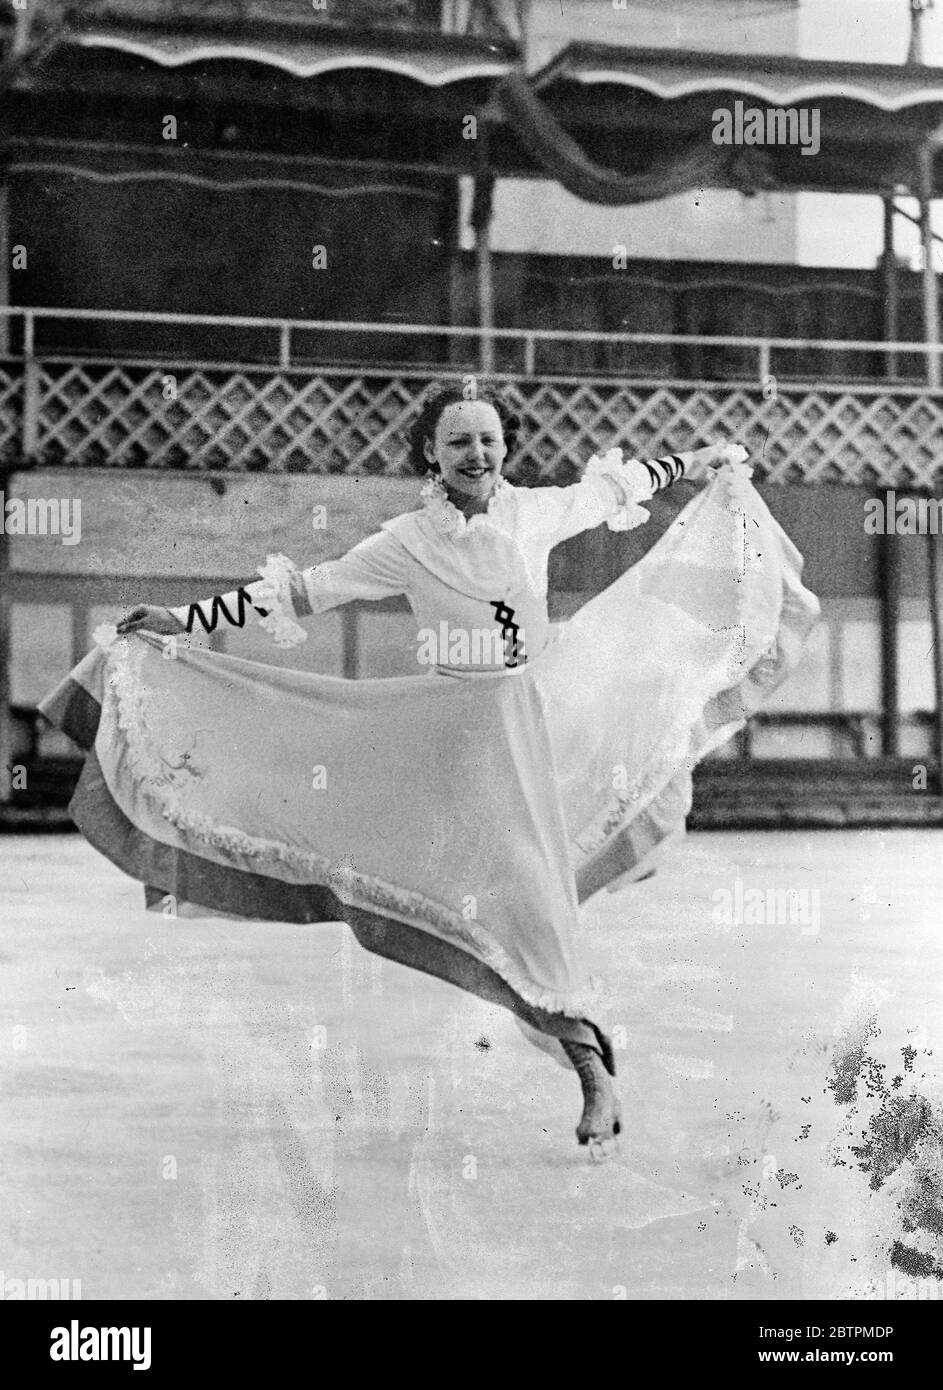 Sie Schlittschuh in Röcken. Fraulein Illy Holzmann, berühmte österreichische Skaterin, ist so geschickt auf dem Eis, dass sie sich sicher genug fühlt, ihre drehenden Beine in voluminöse Röcke zu wickeln, anstatt das von den meisten Champions favorisierte kürzere Kleid. Foto zeigt, dass Fraulein Illy Holzmann in ihren langen Röcken auf einer Ausstellung in Wien über das Eis gleitet. 29. November 1935 1936 Stockfoto